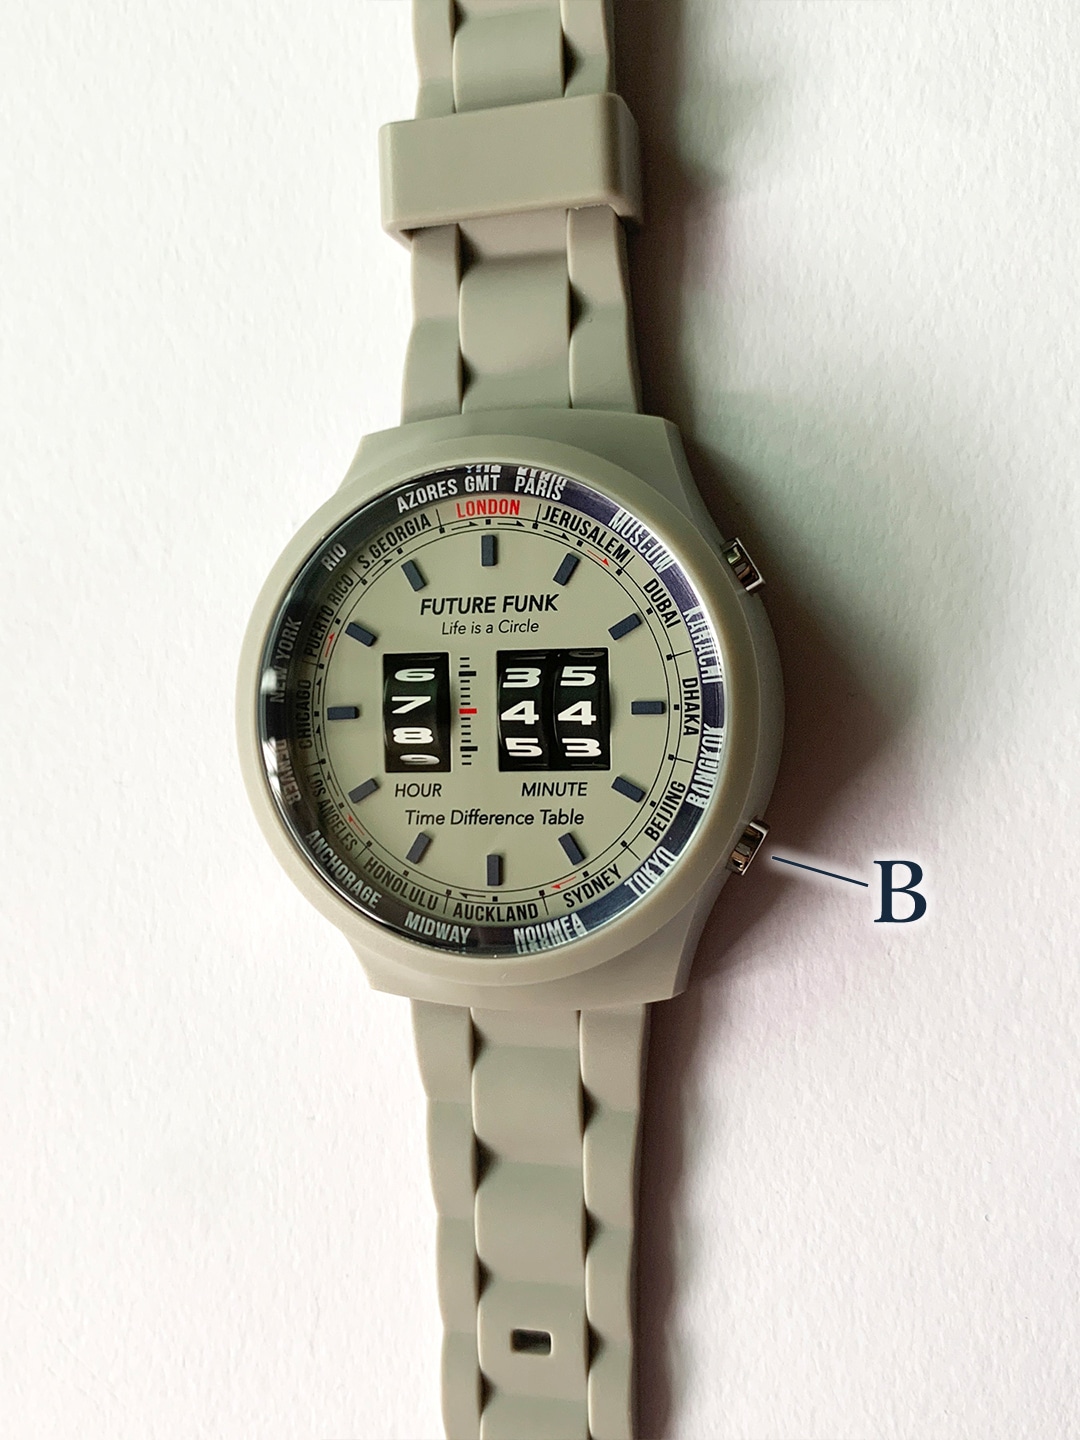 ローラー式腕時計 【FUTURE FUNK/フューチャーファンク】